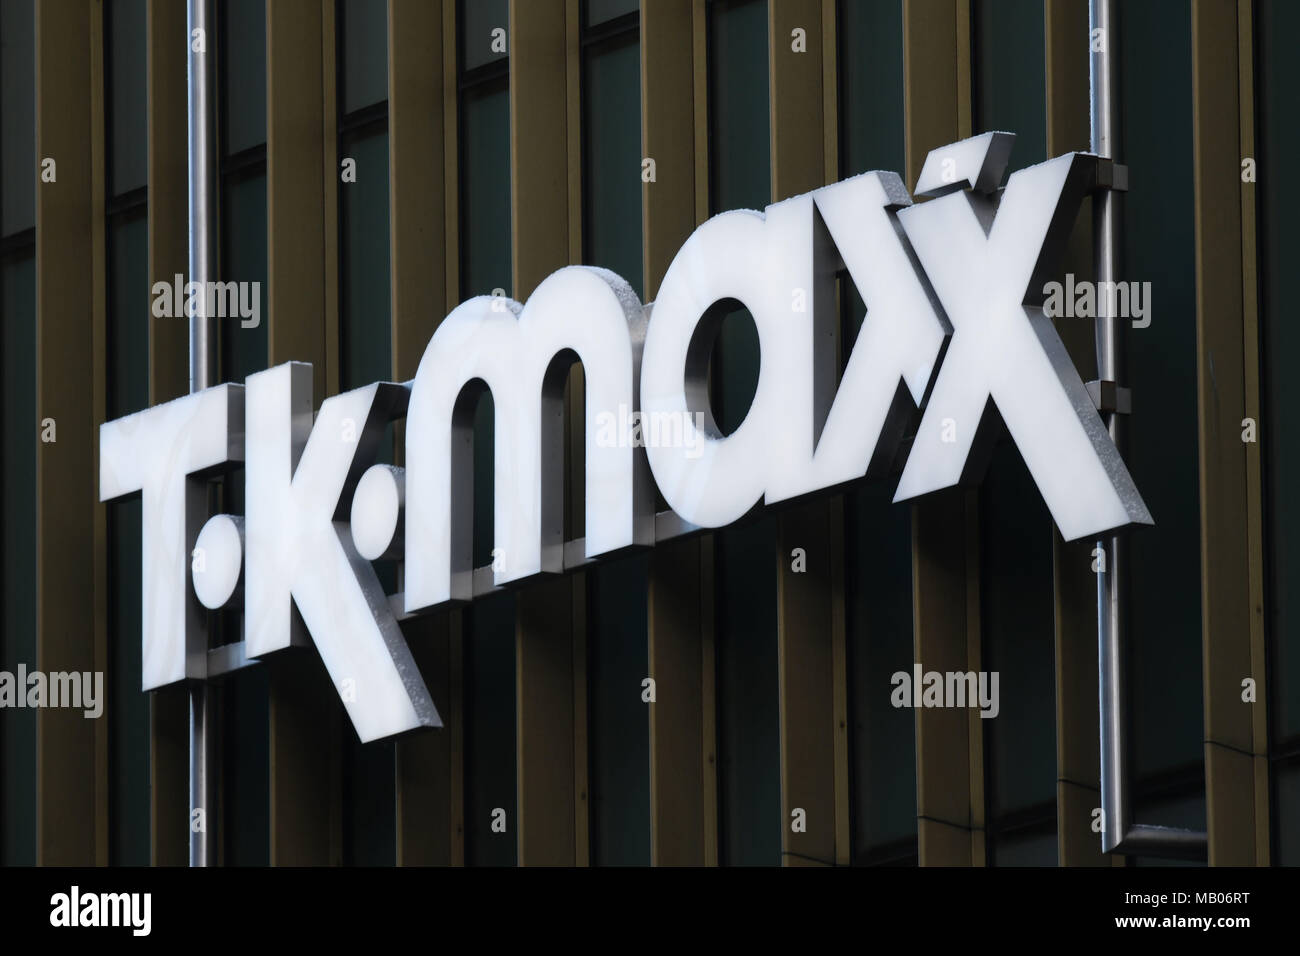 Tk Maxx shop sign logo. Stock Photo